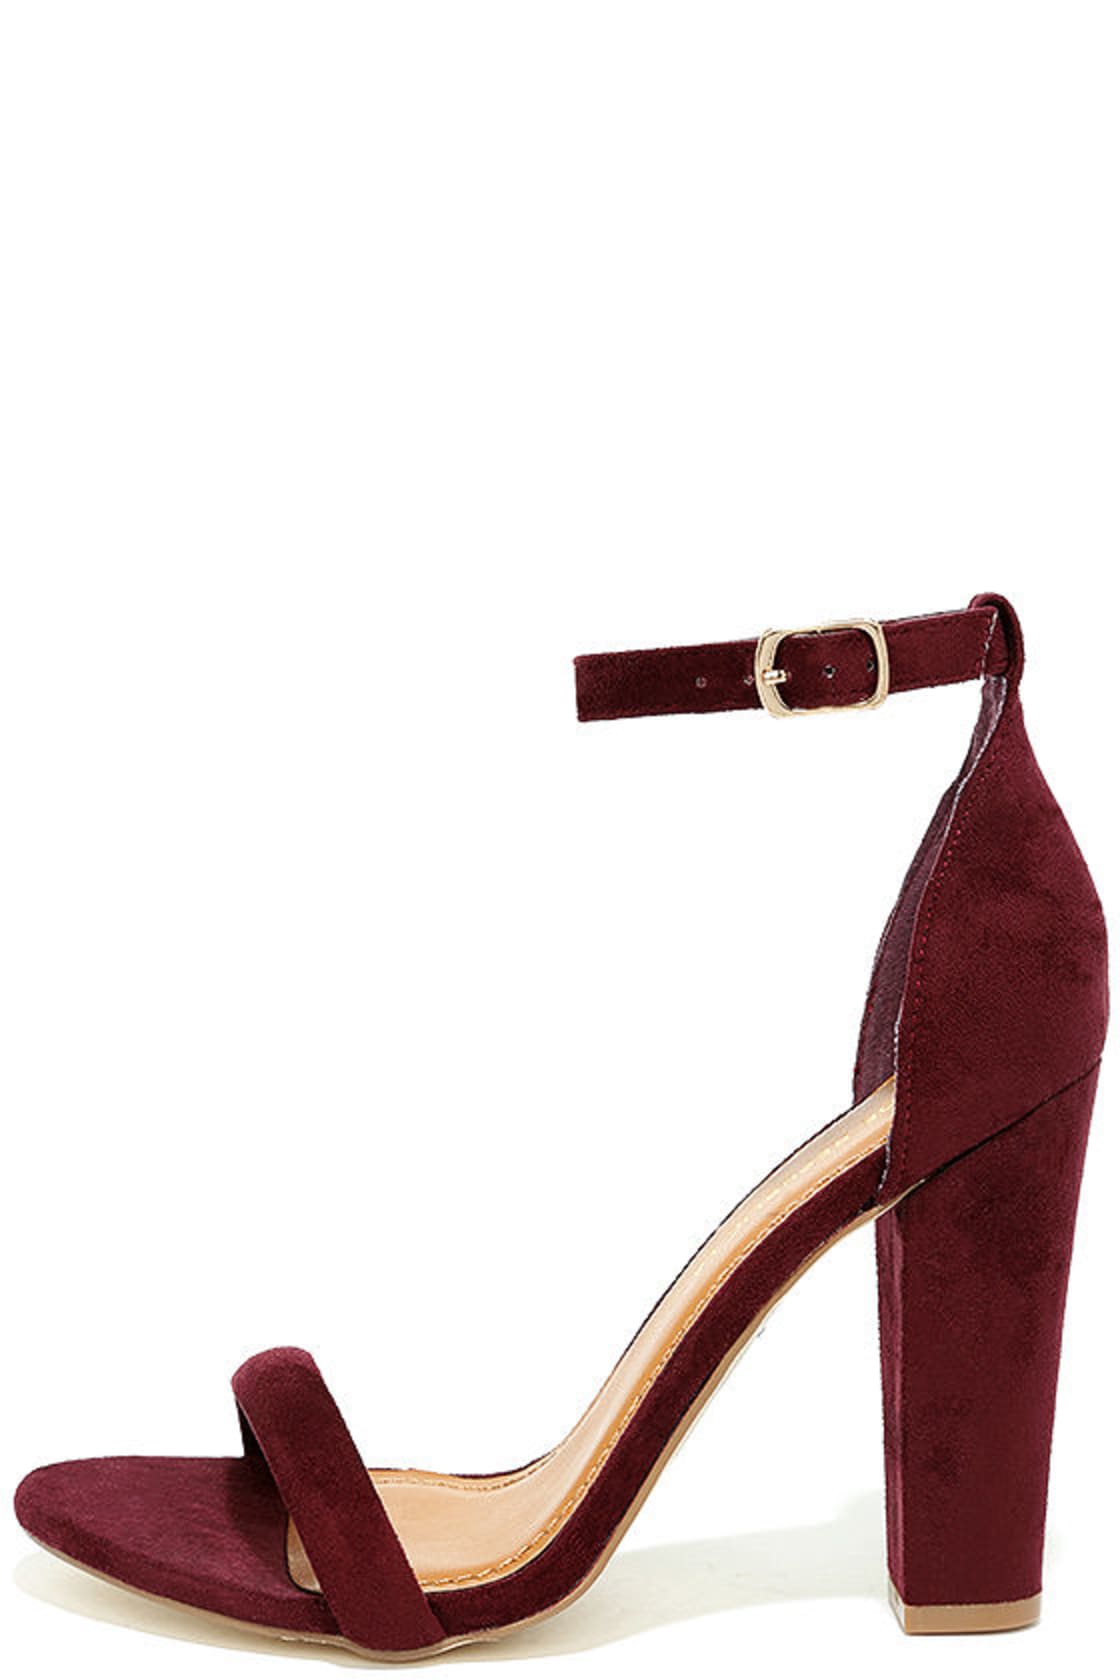 Cute Burgundy Heels - Suede Ankle Strap Heels - Burgundy Block Heels ...